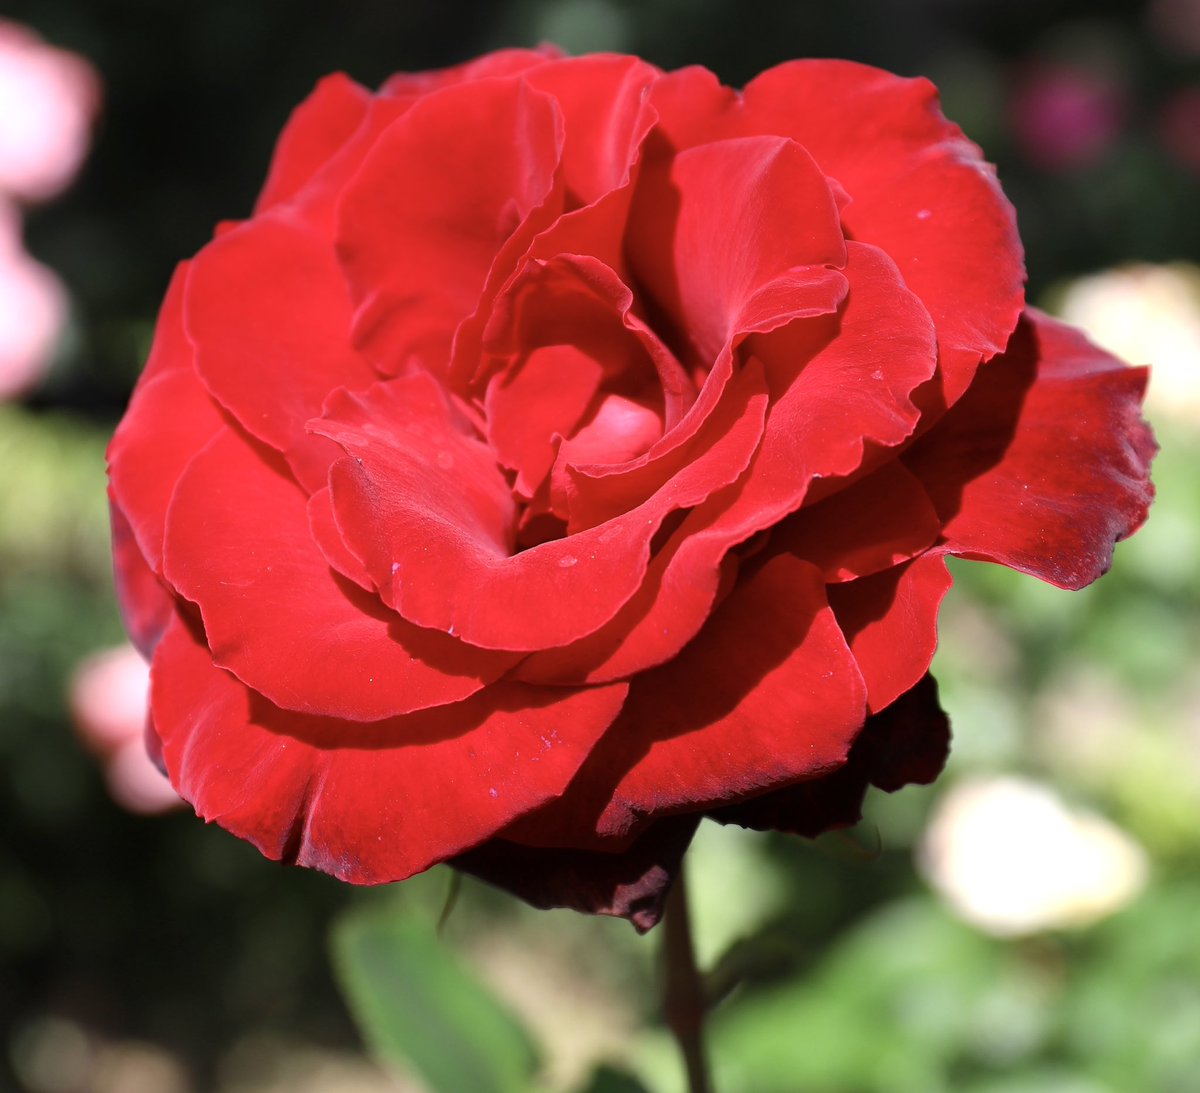 バラ🌹ベルサイユのばら🌹仏 大輪の真紅の花色が美しい！ 宝塚ファンでなくても、このバラの名前には惹かれる。弁質はビロードのようで気品があり堂々とした花姿、まさにベルばらの世界 #バラ #島和太郎 #オフィスアーツ #花 #flowers #庭園 #スイーツ #CM #タレント #モデル #朝 #空…